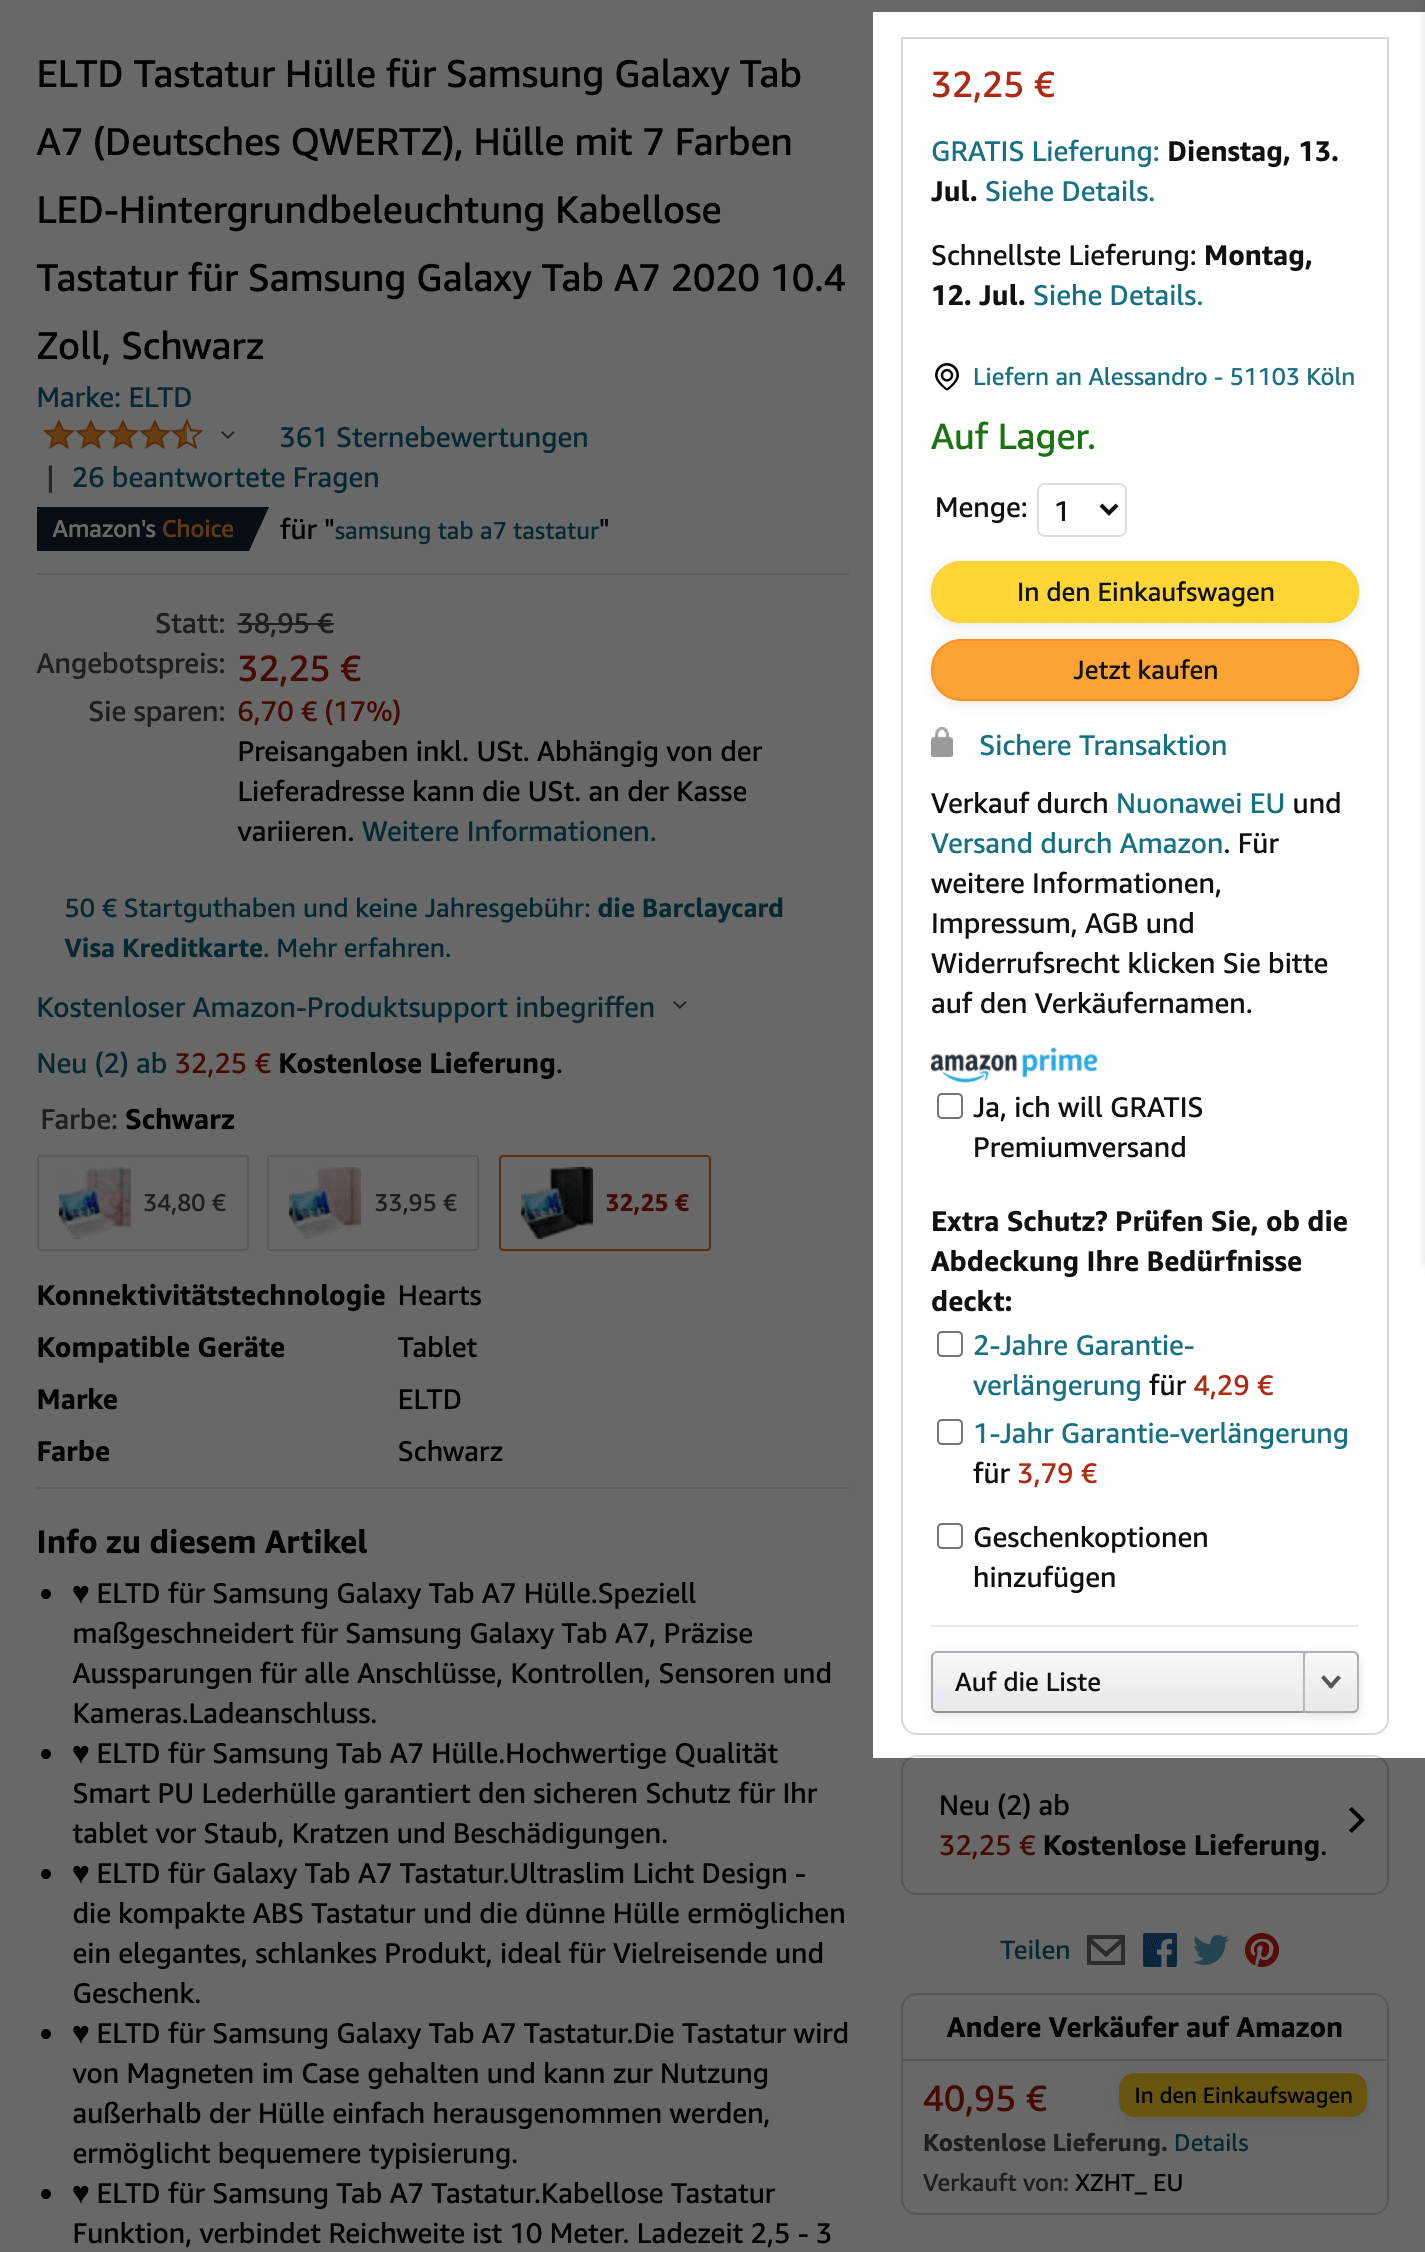 Buy-Box-Beispiel auf einer Amazon-Produktseite.